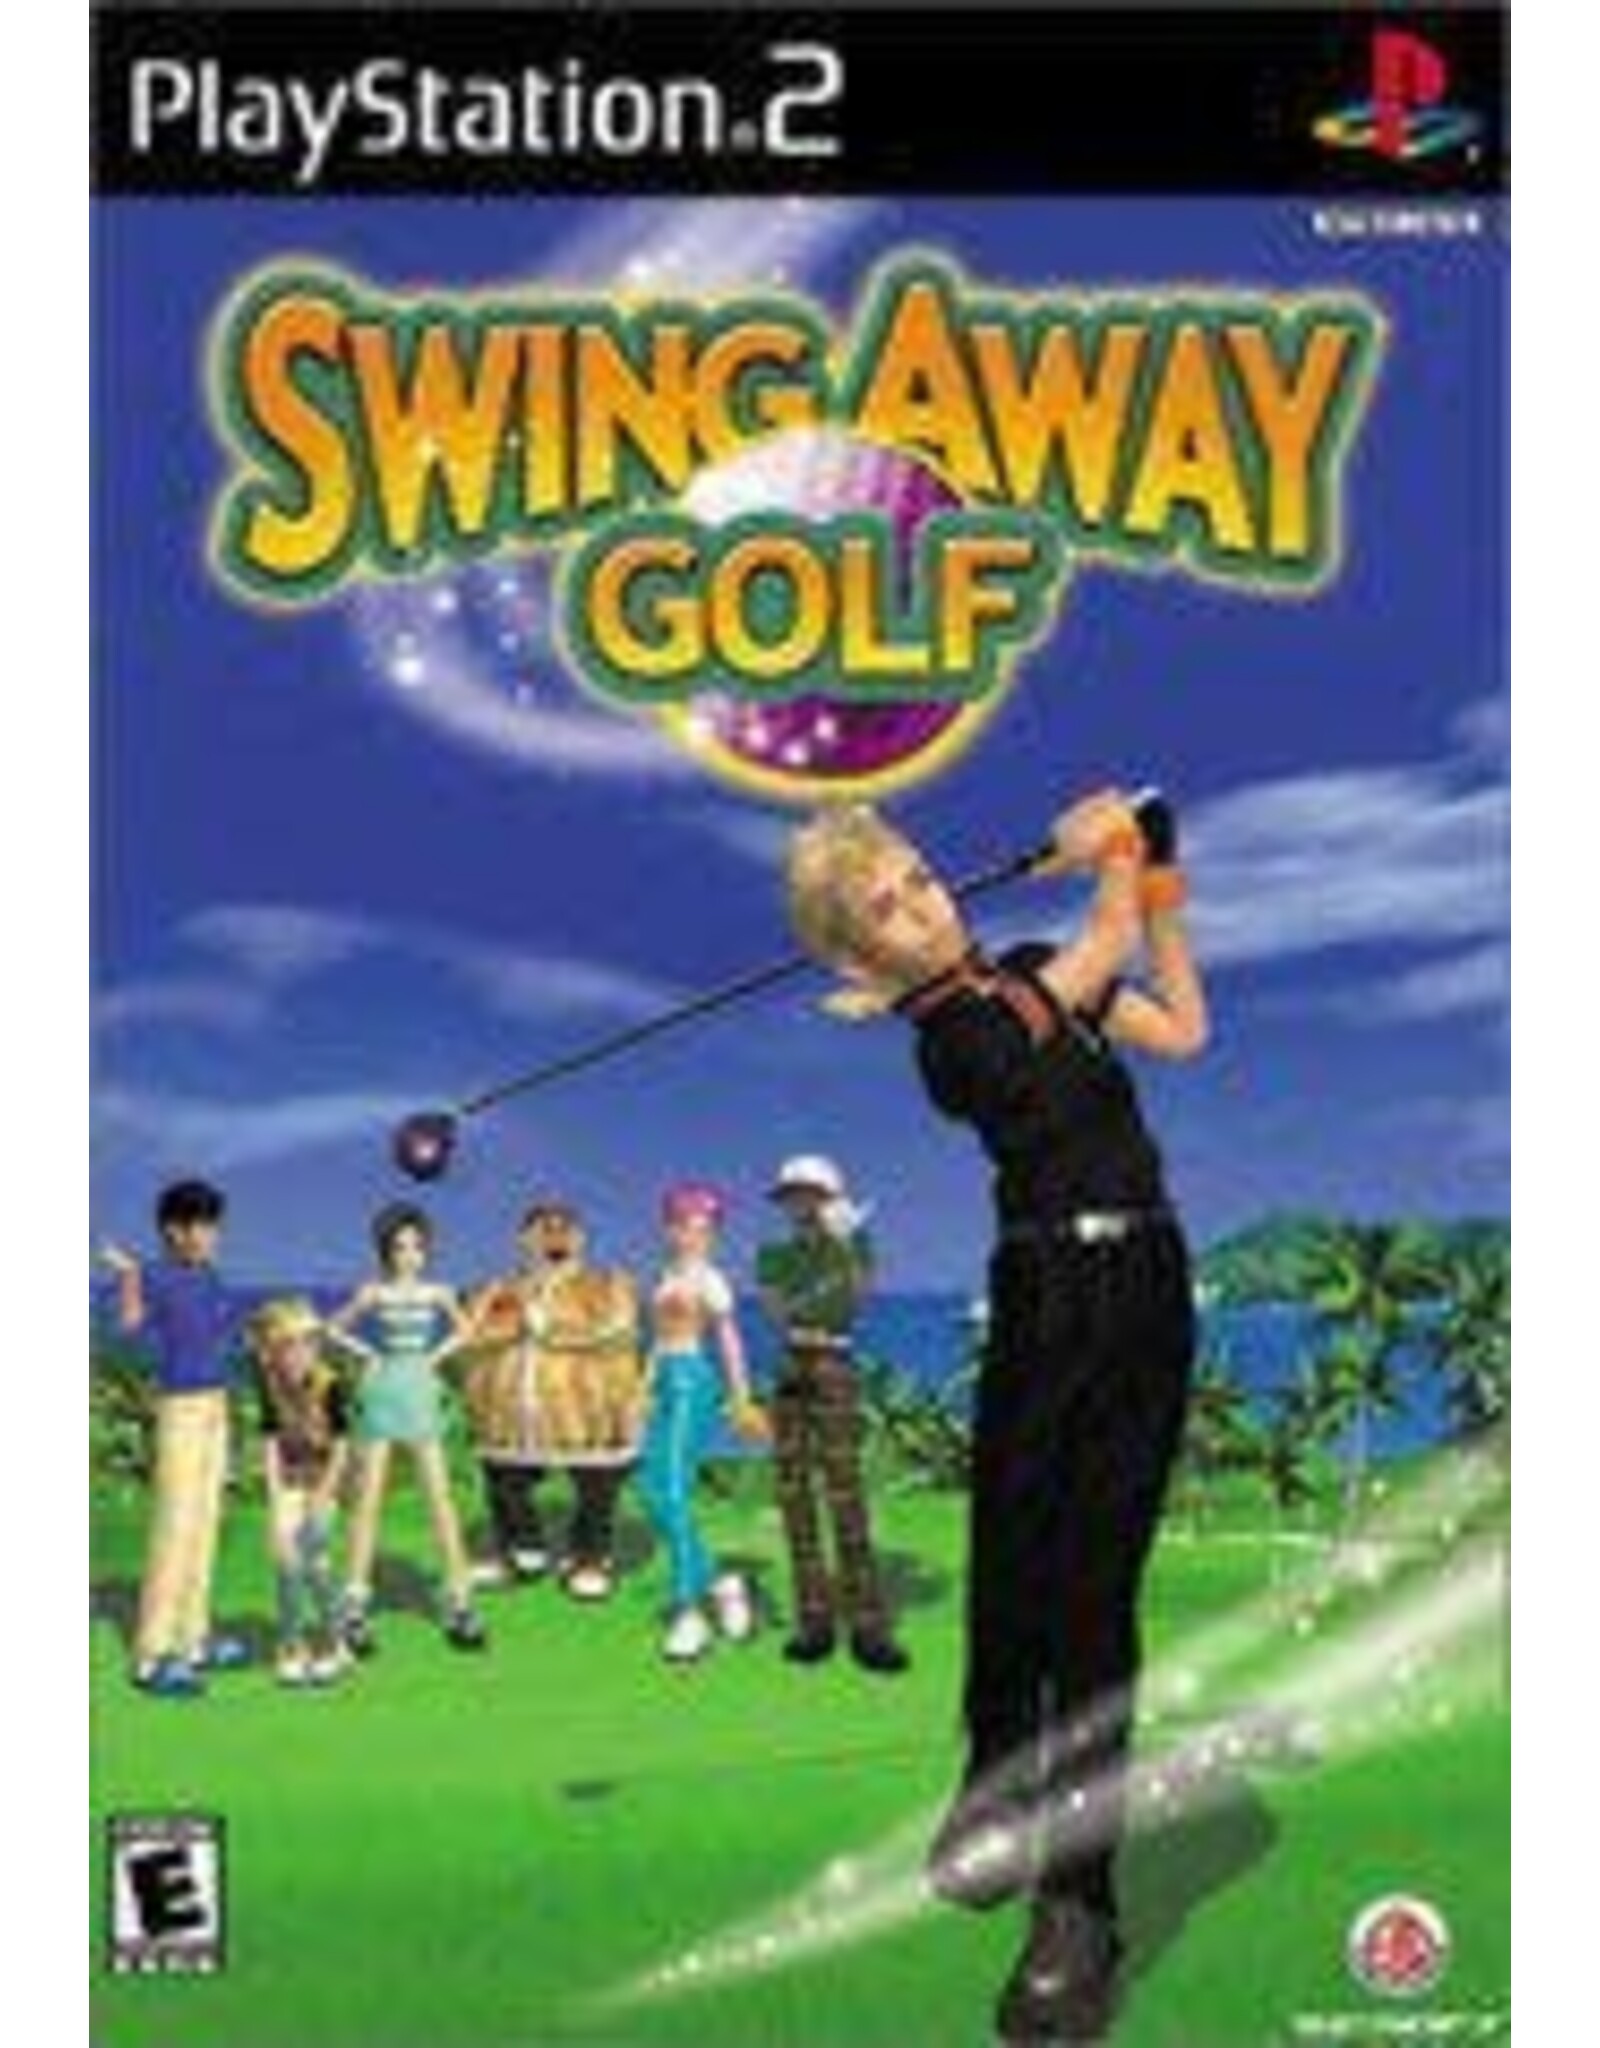 Playstation 2 Swing Away Golf (CiB)